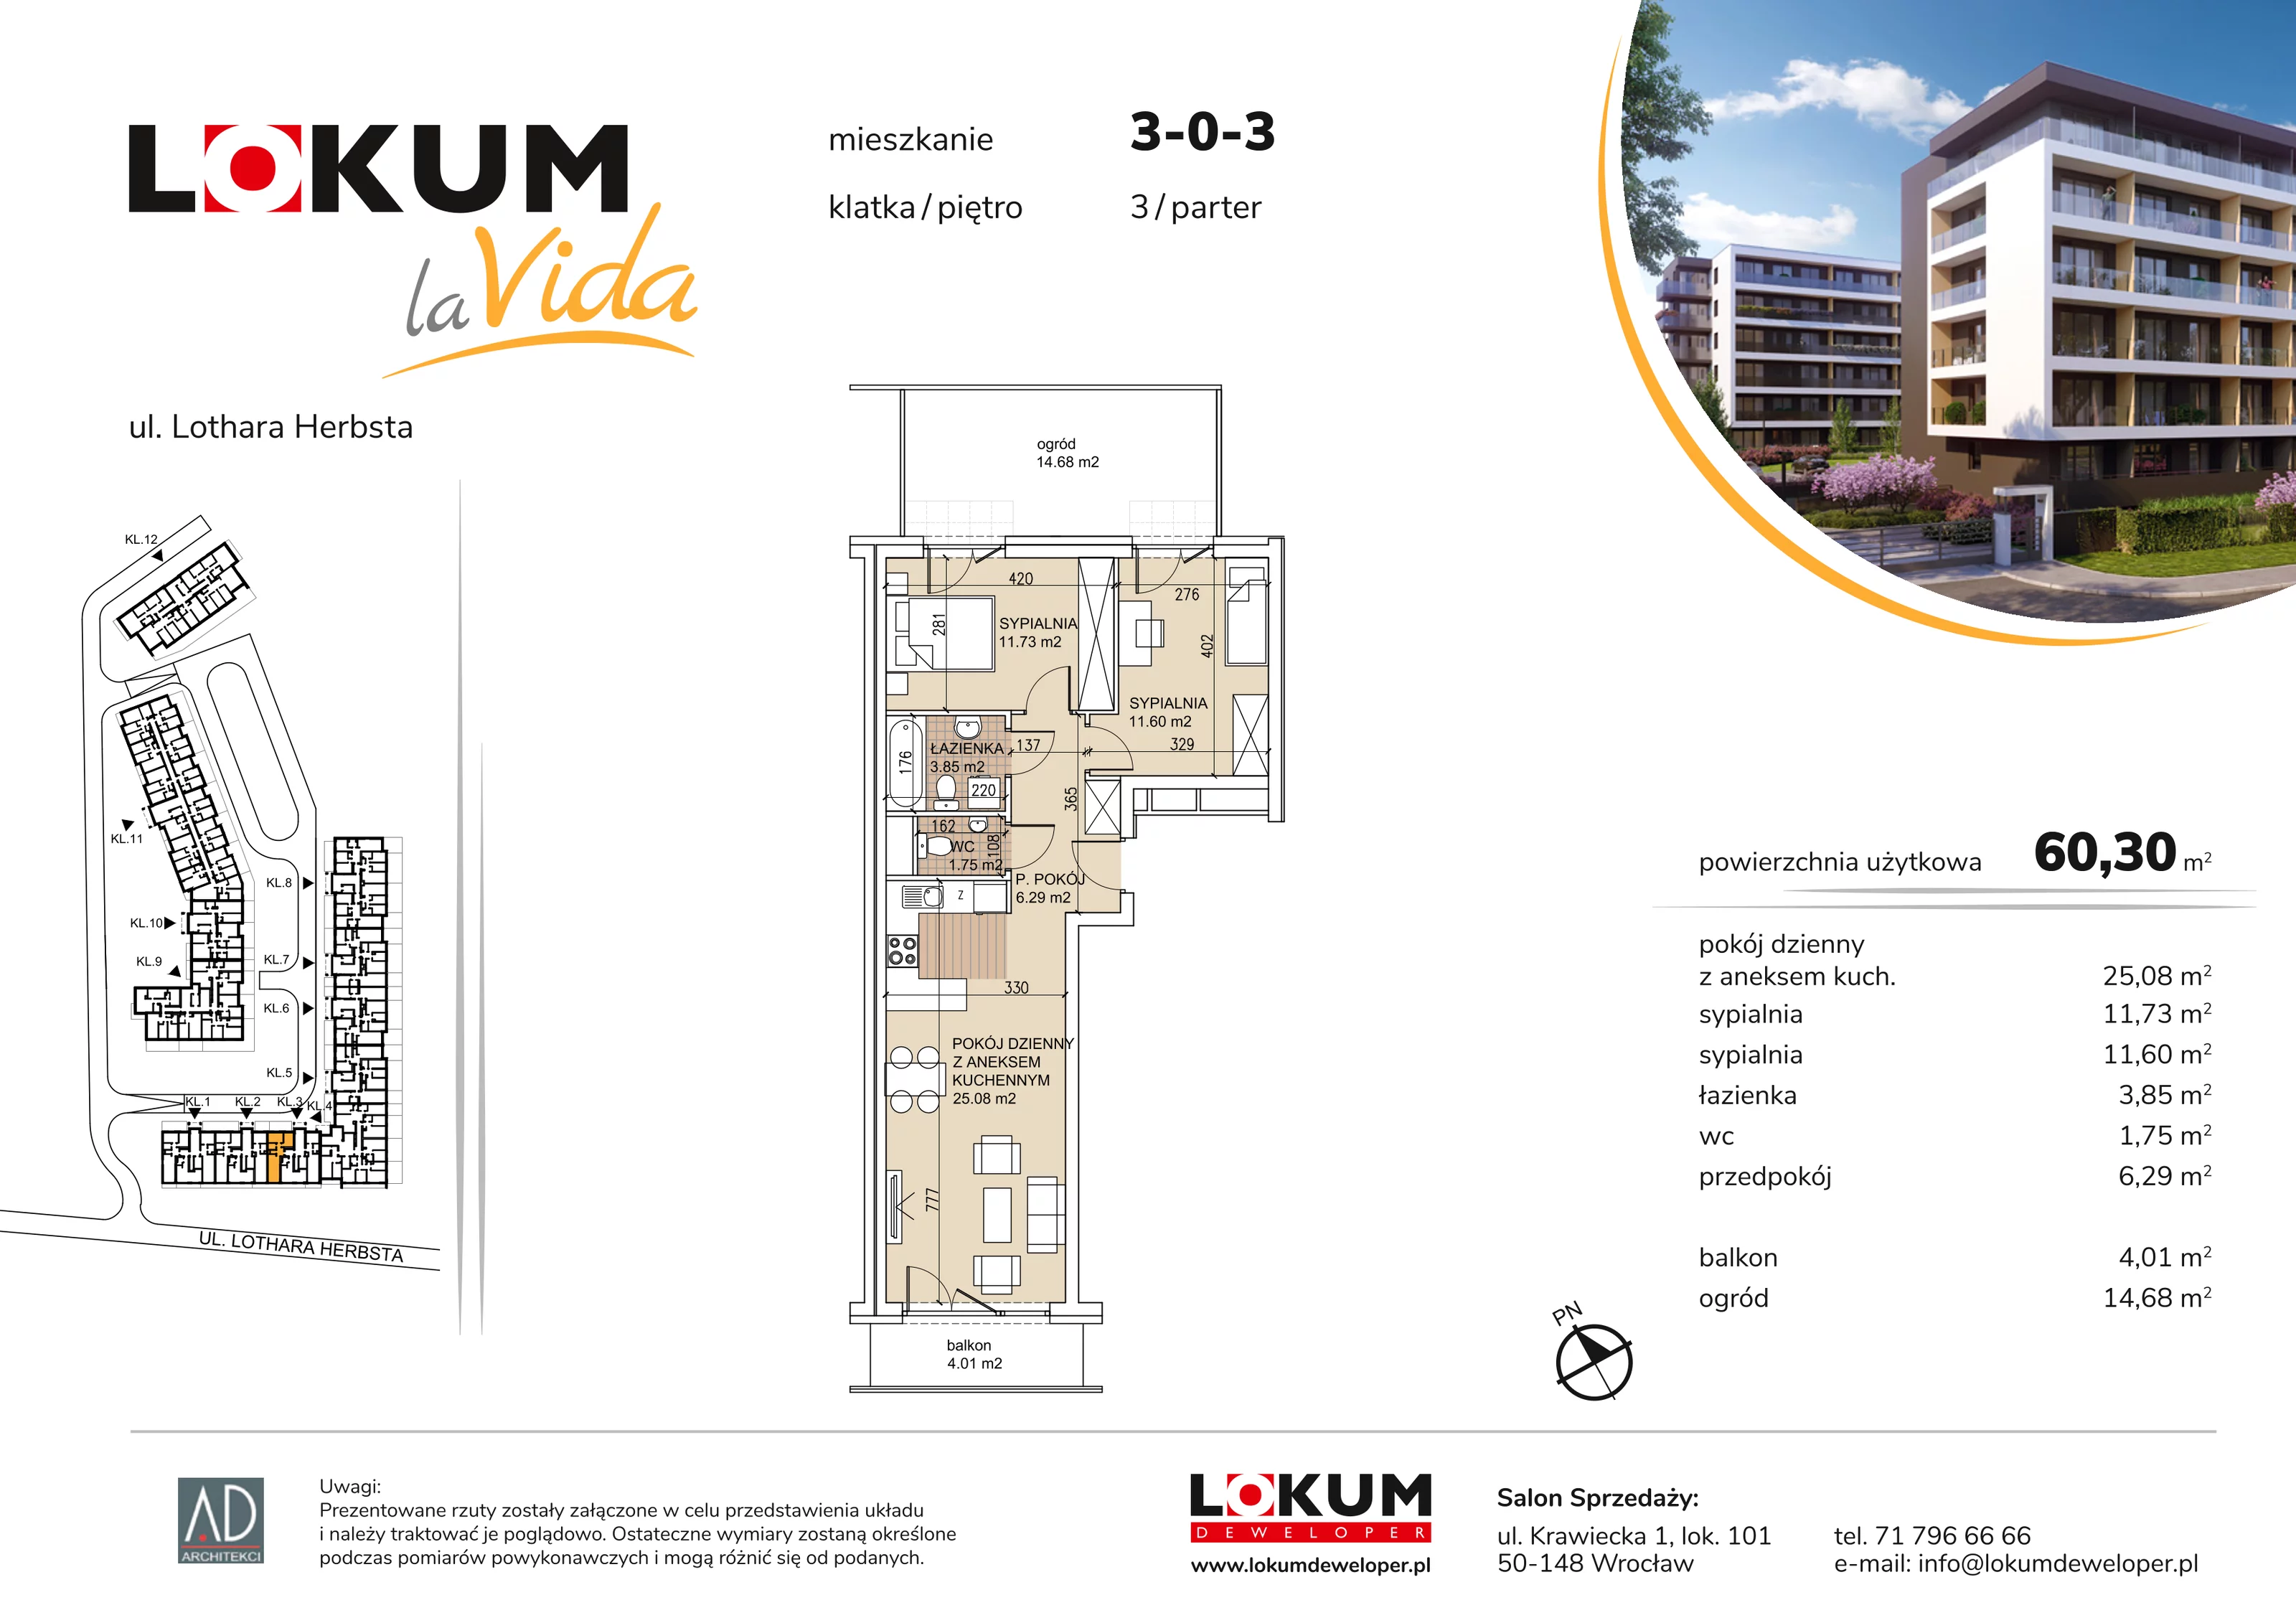 Mieszkanie 60,30 m², parter, oferta nr 3-0-3, Lokum la Vida, Wrocław, Sołtysowice, ul. Lothara Herbsta